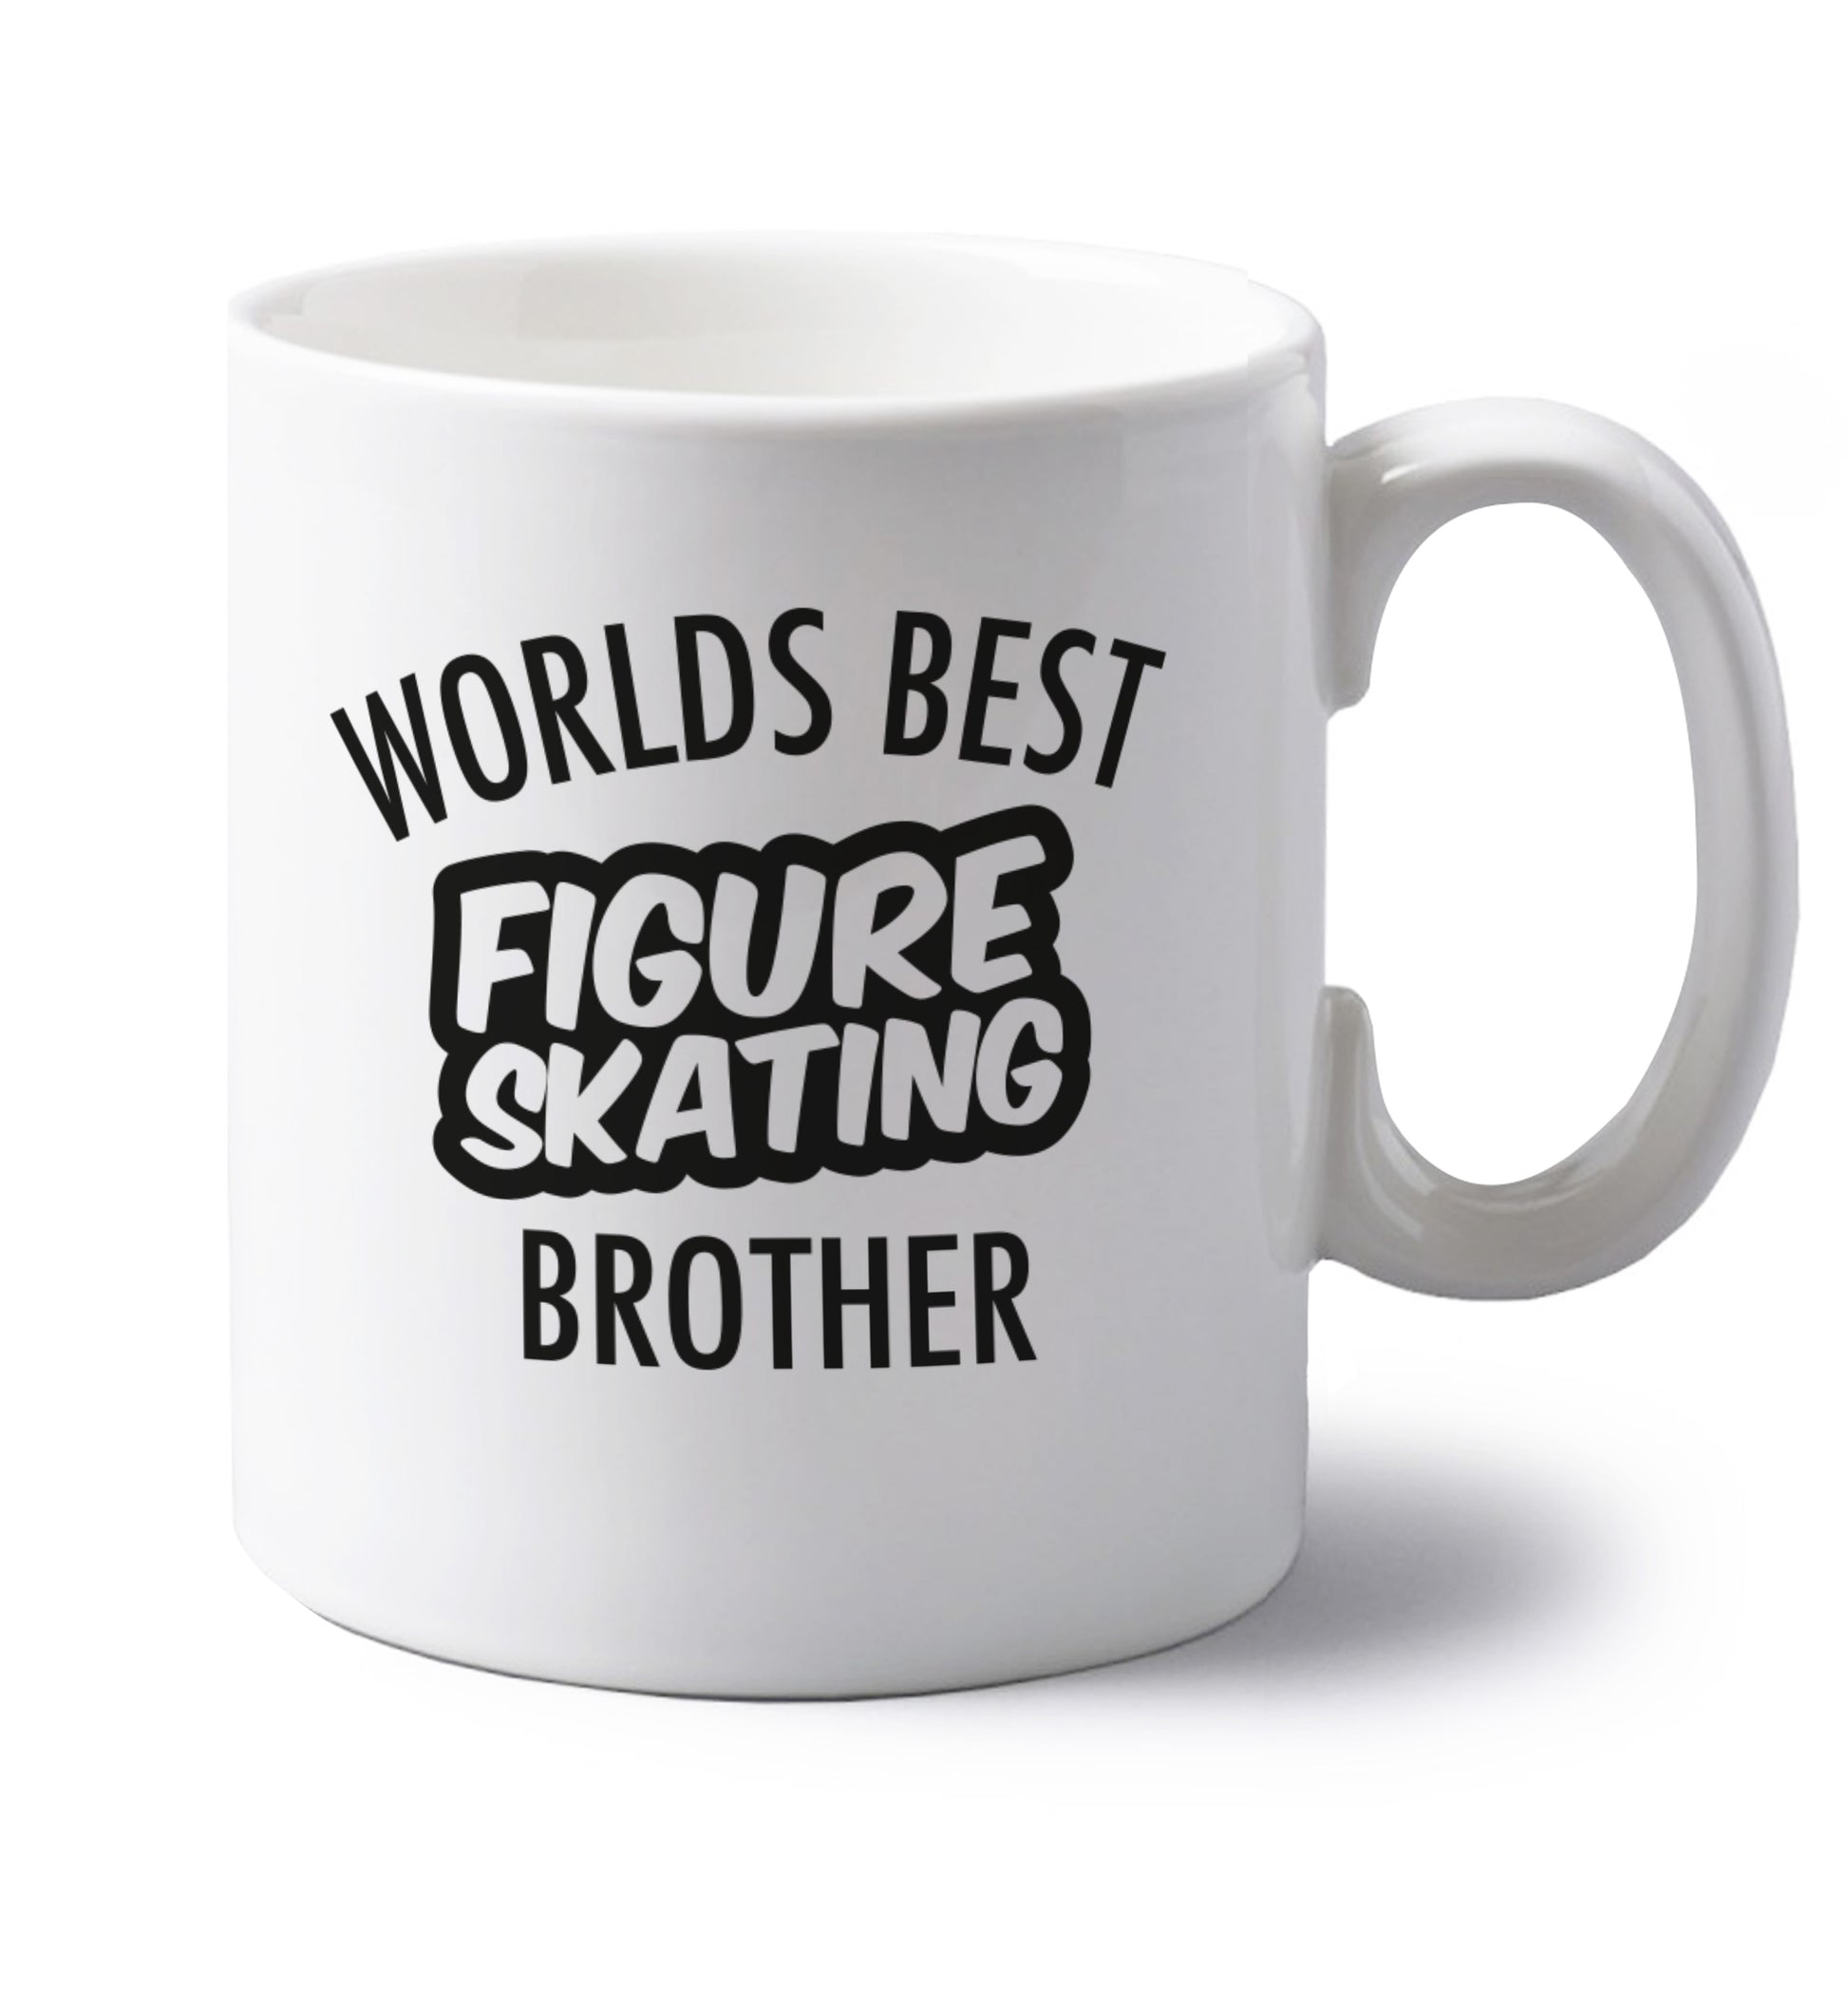 Worlds best figure skating brother left handed white ceramic mug 